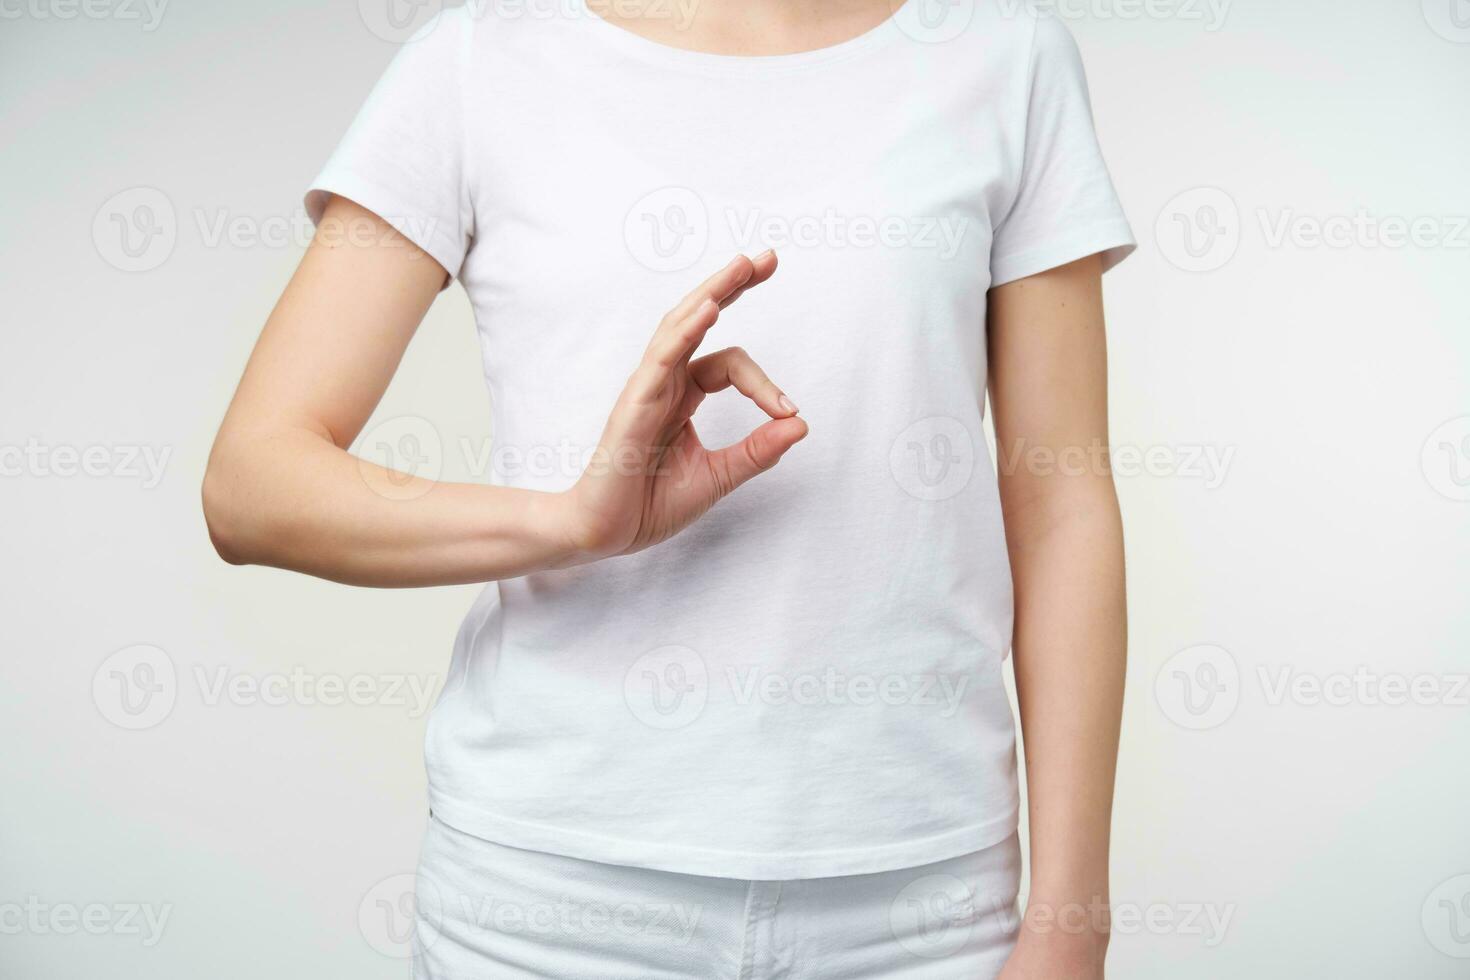 inomhus- Foto av ung kvinna klädd i tillfällig kläder formning ok gest med henne fingrar medan stående över vit bakgrund. tecken språk begrepp